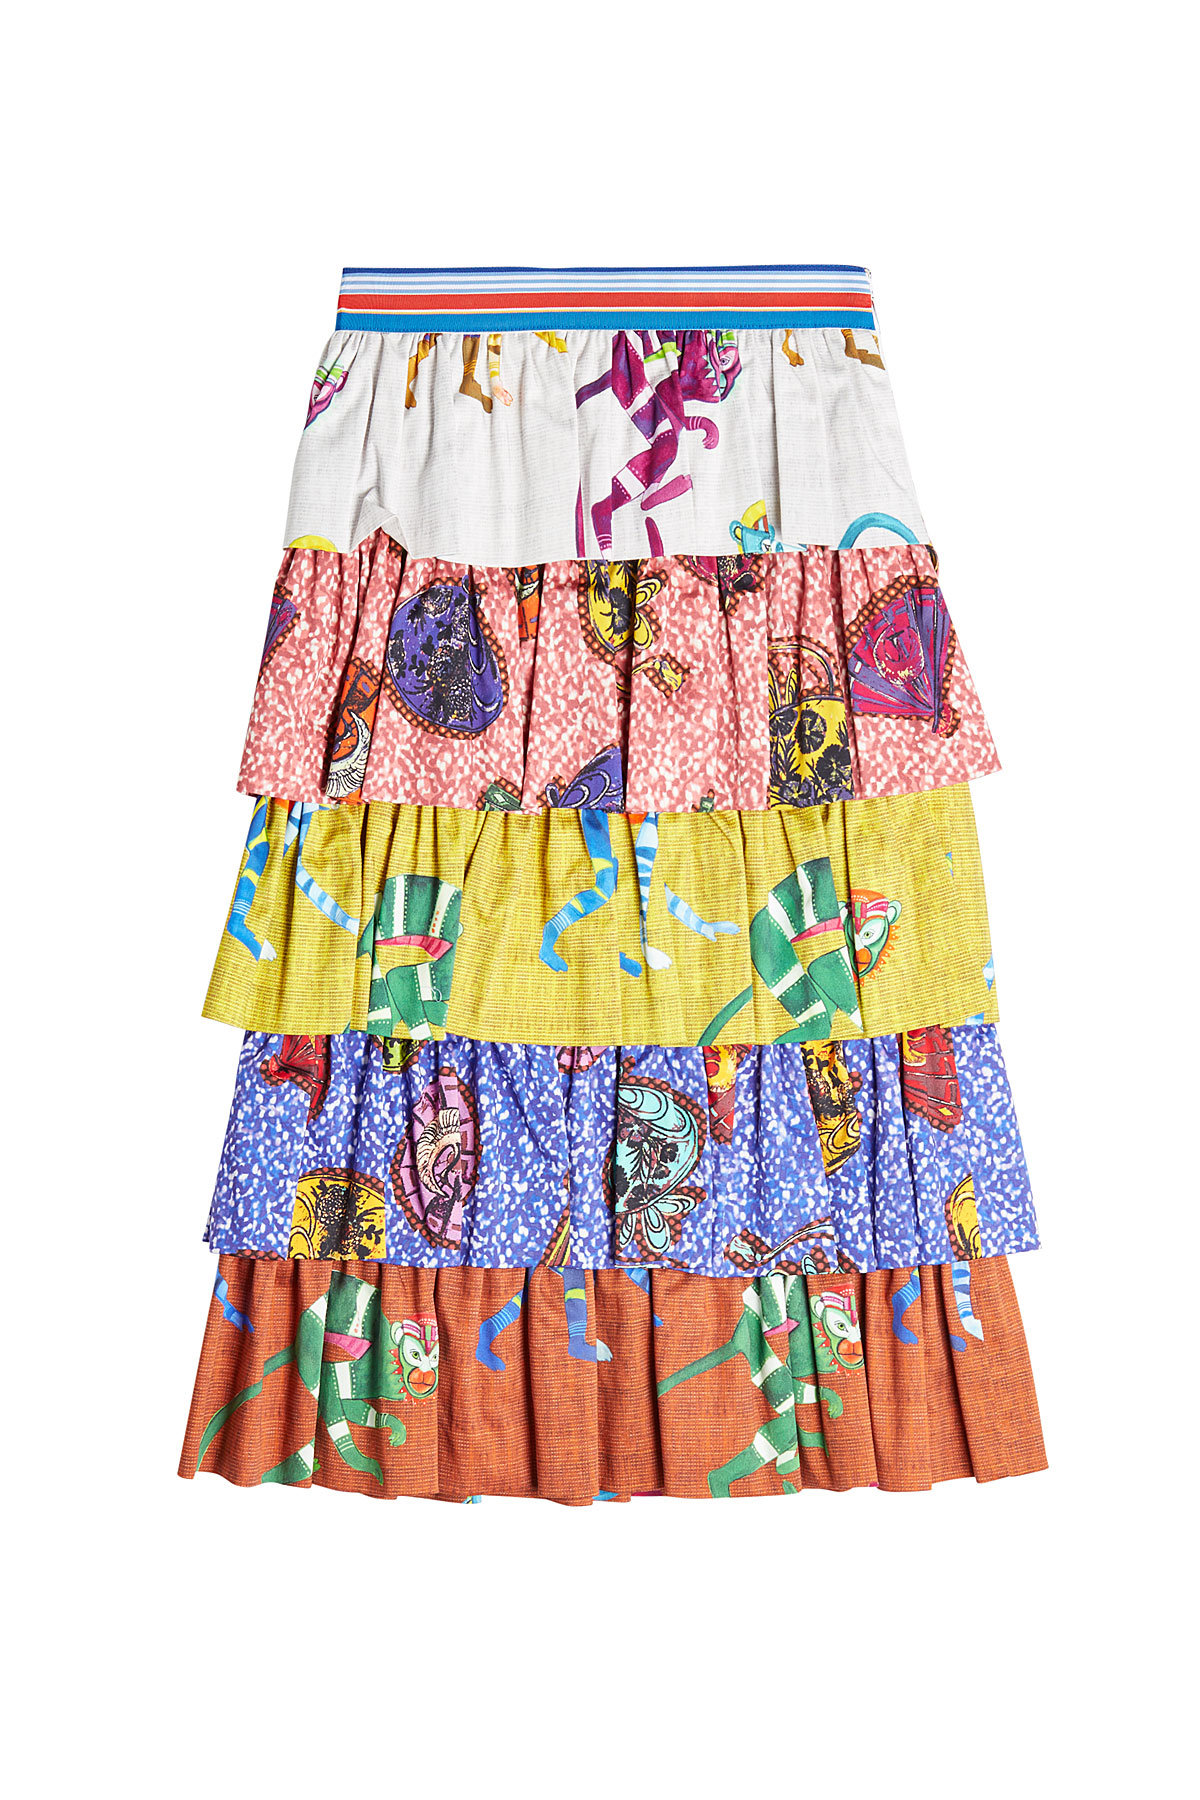 Stella Jean - Tiered Cotton Print Skirt